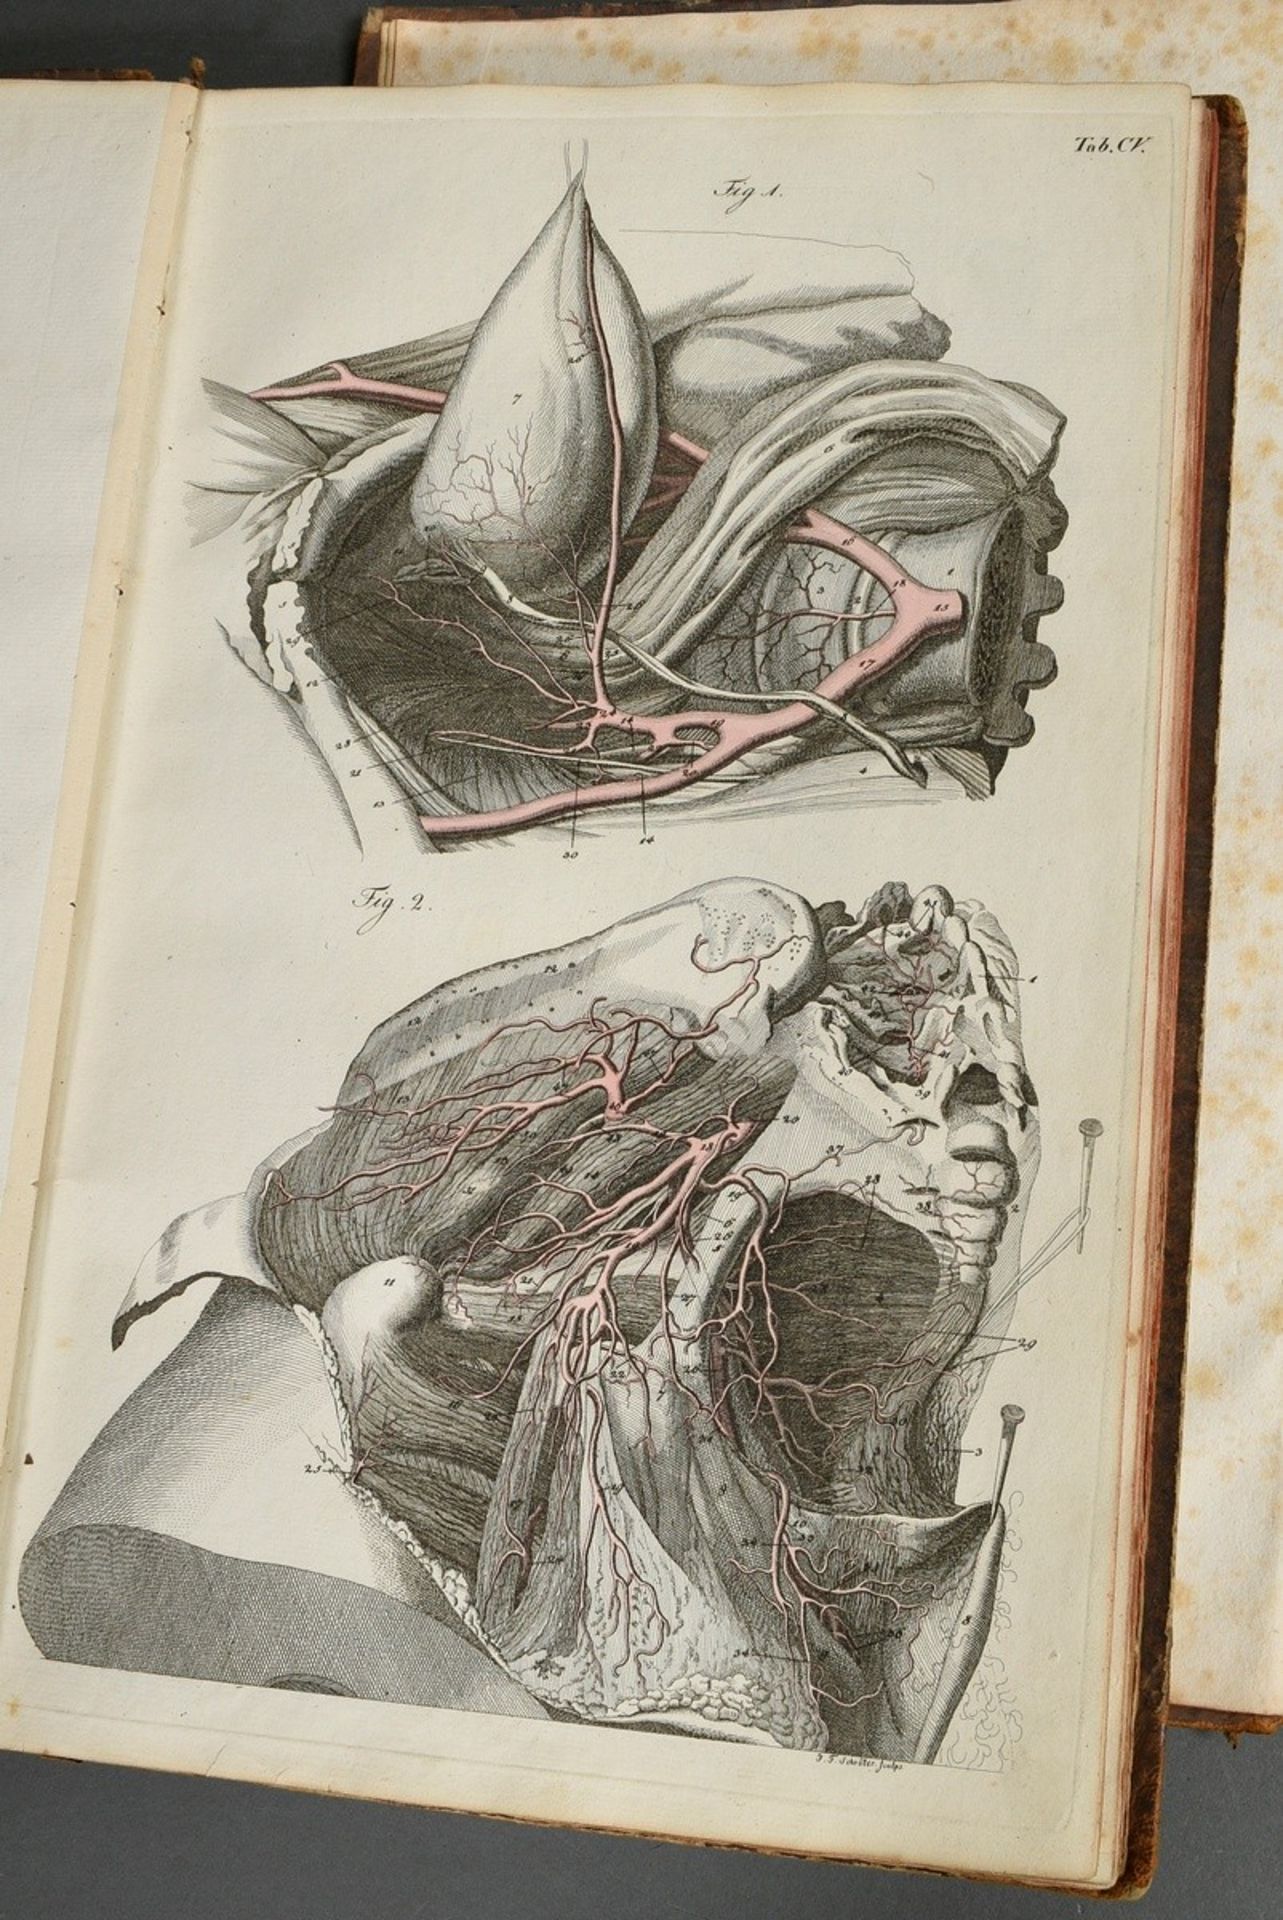 2 volumes Justus Christian von Loder "Tabularum Anatomicarum/ Volumen I und II" 1803, half-leather  - Image 4 of 8